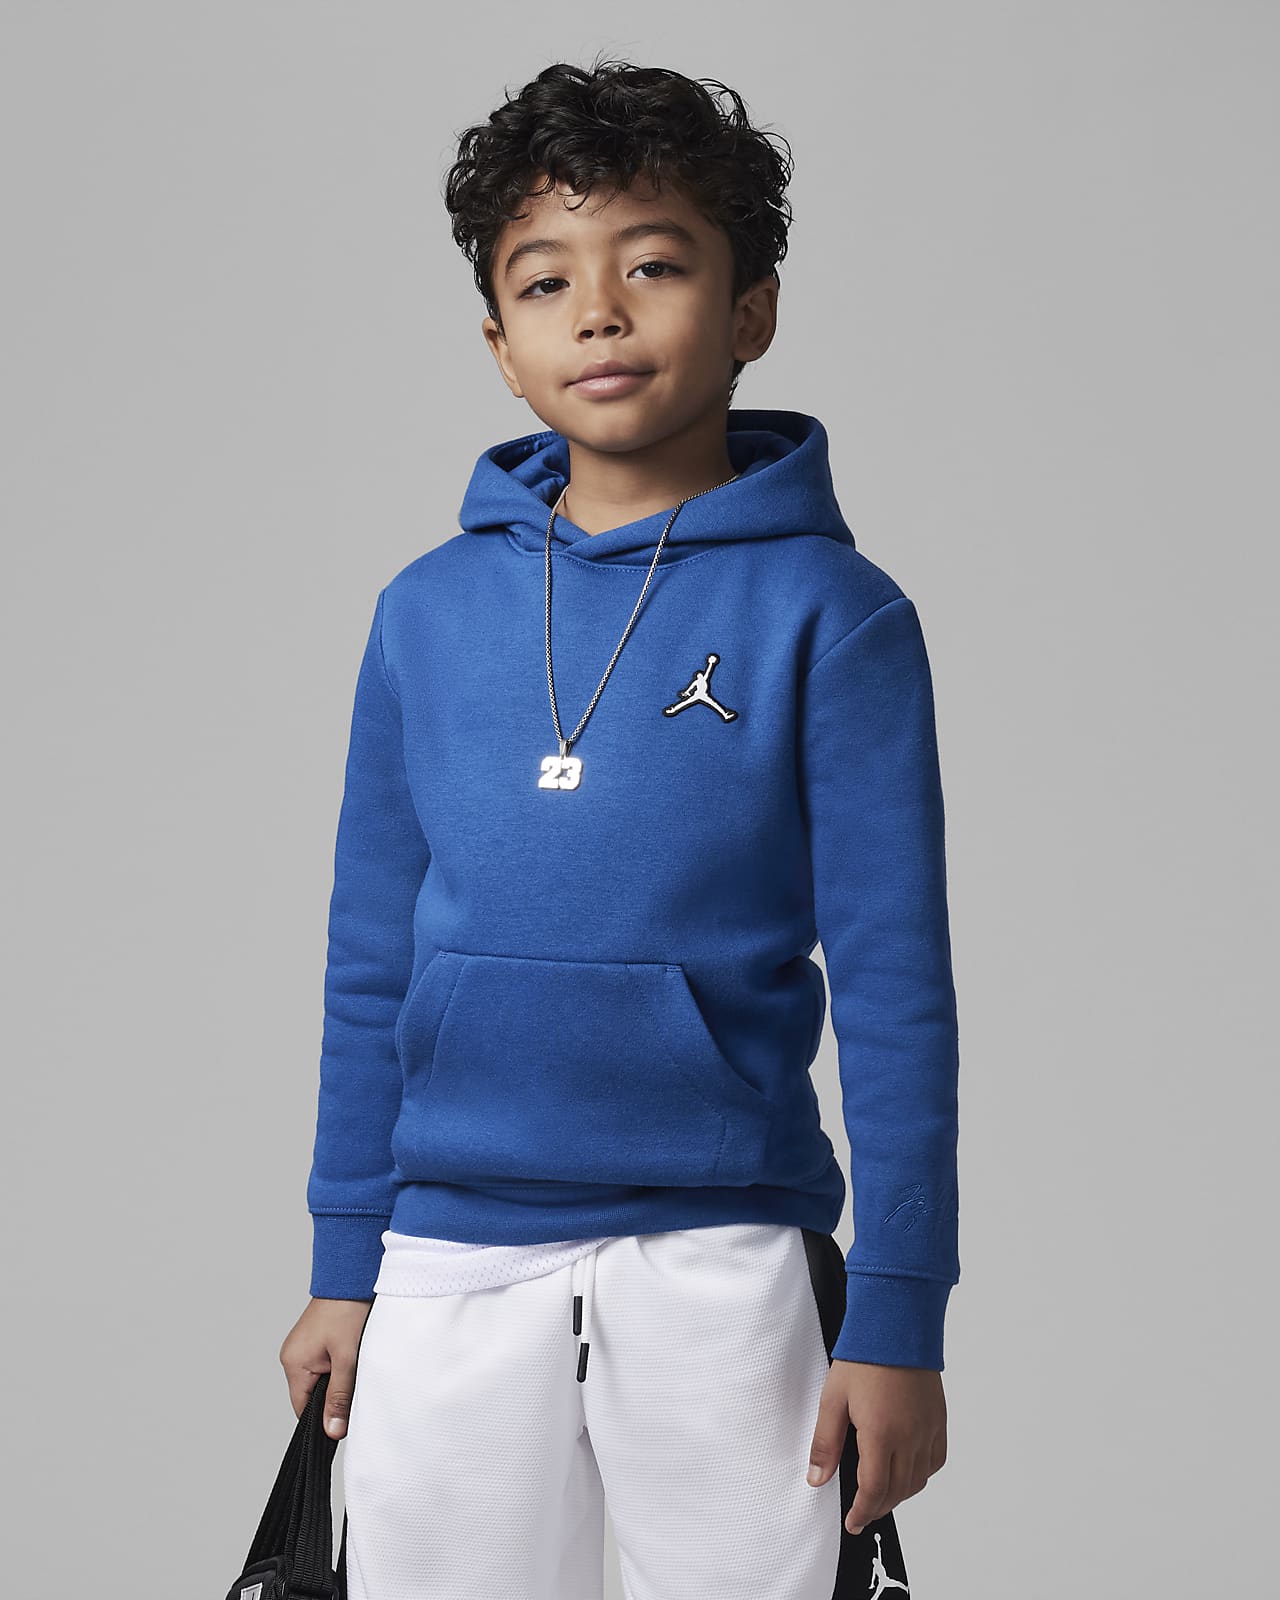 filosof strand Vært for Jordan Little Kids' Pullover Hoodie. Nike.com